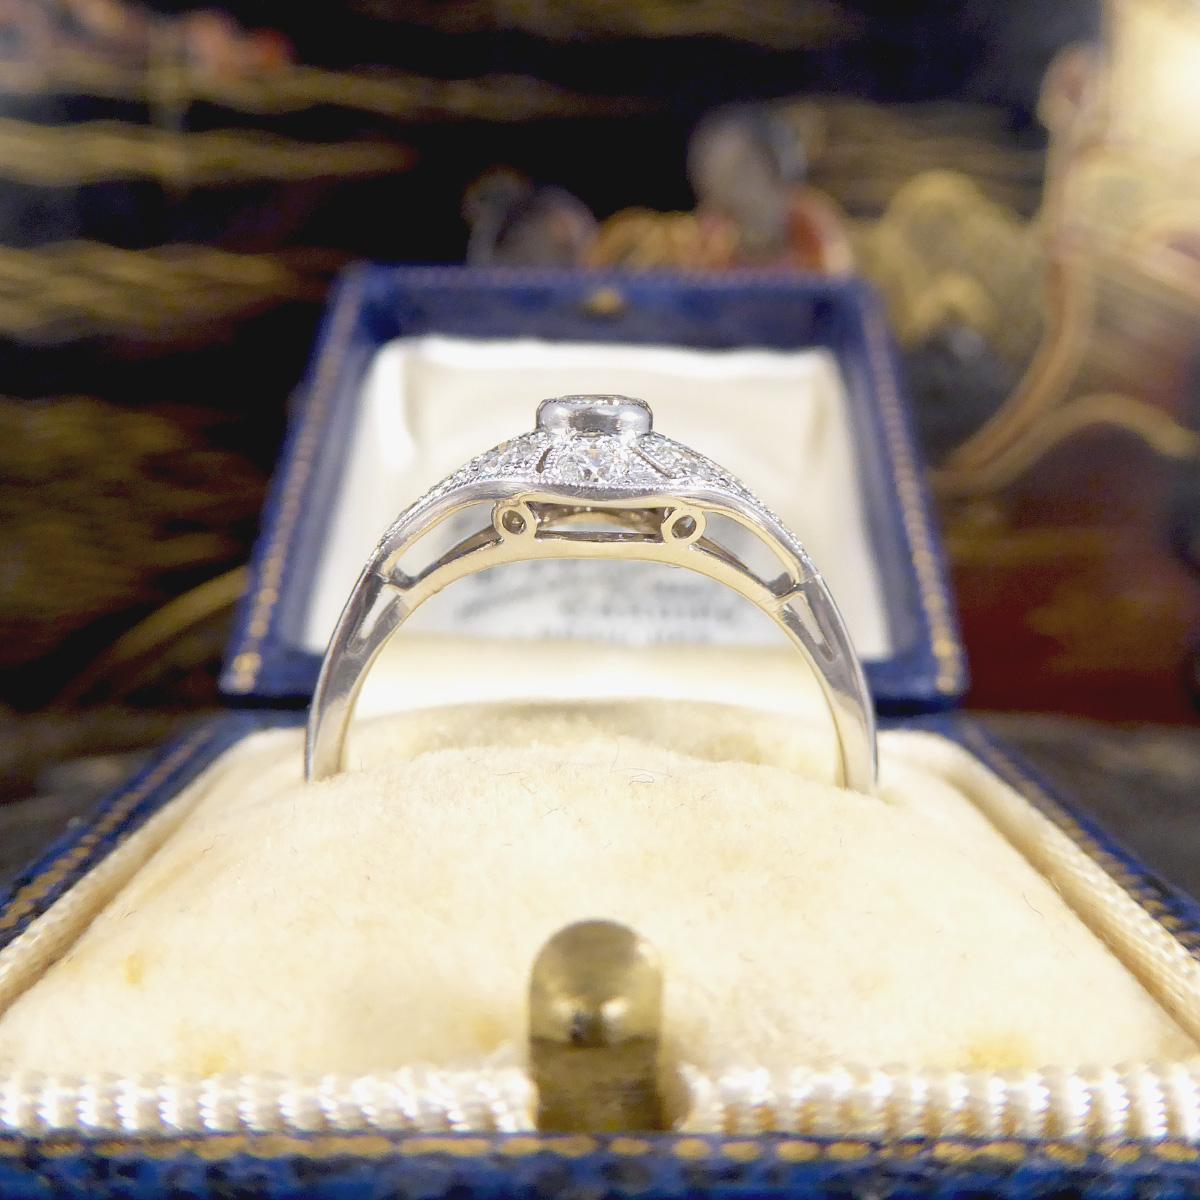 Premium Period Art Deco Replica 0.45ct Diamond Ring in 18ct White Gold For Sale 4